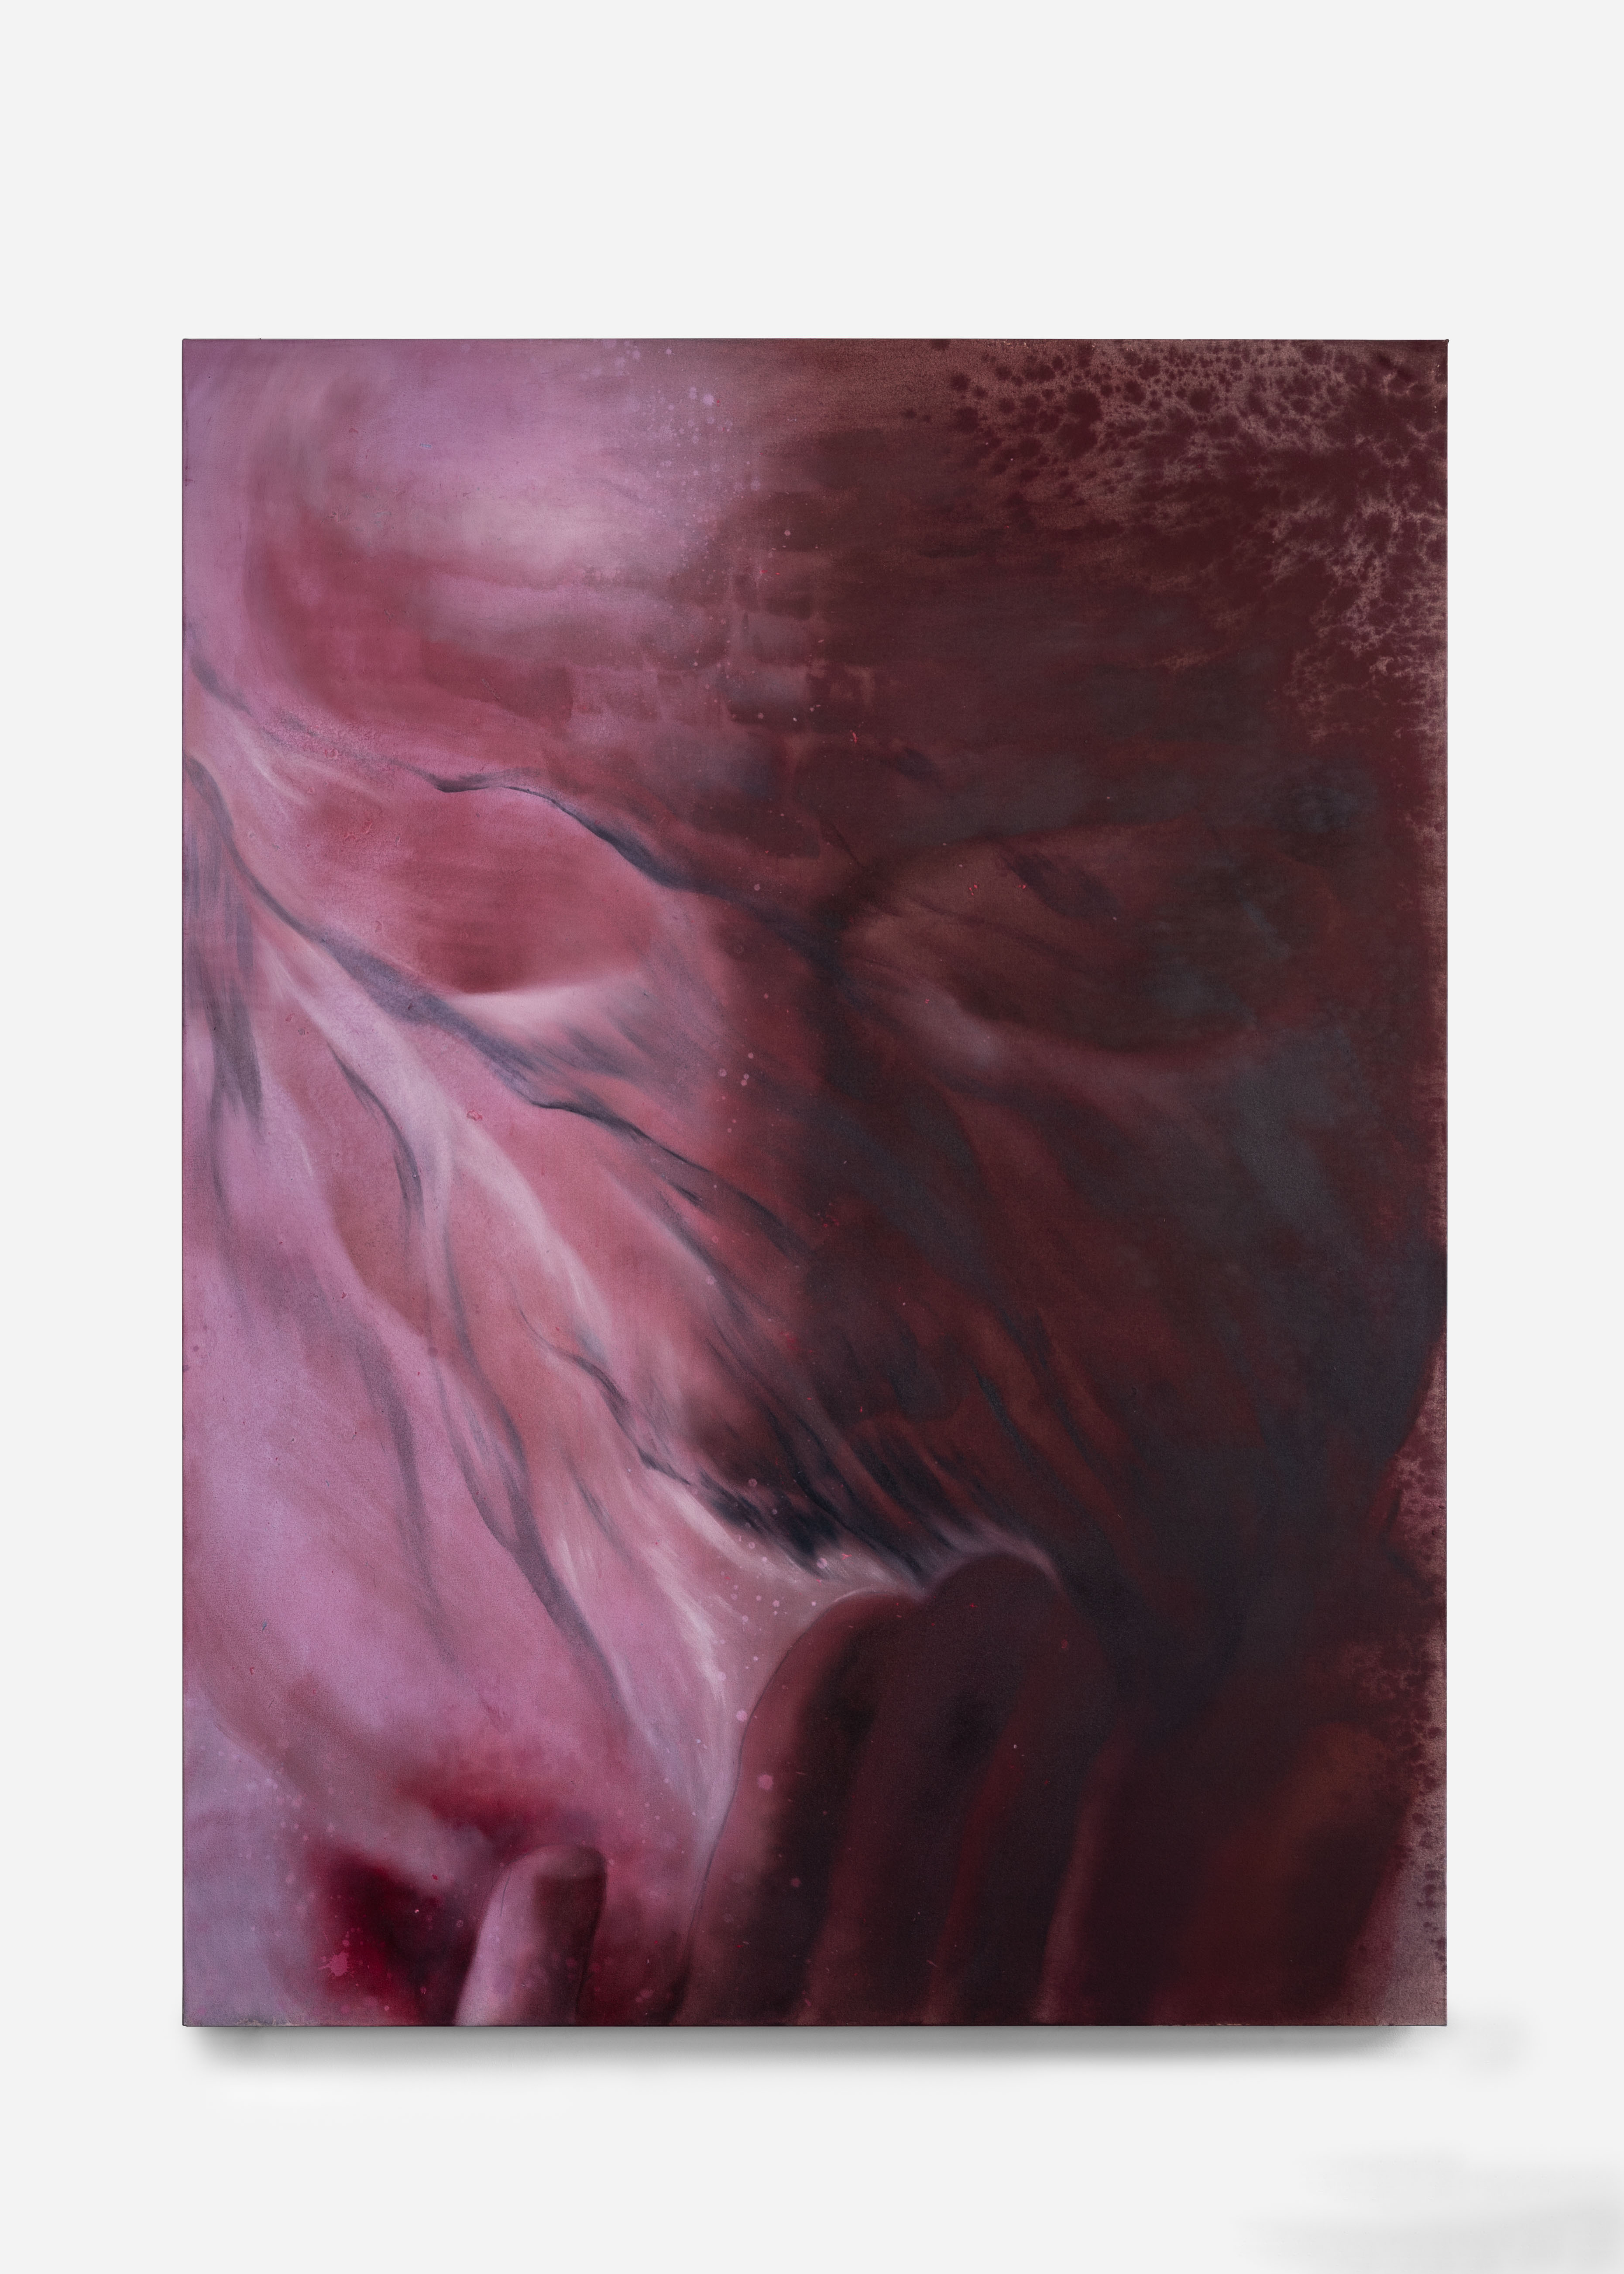 Frozen dust 冻尘150l x 200h cm pigment,oil on canvas